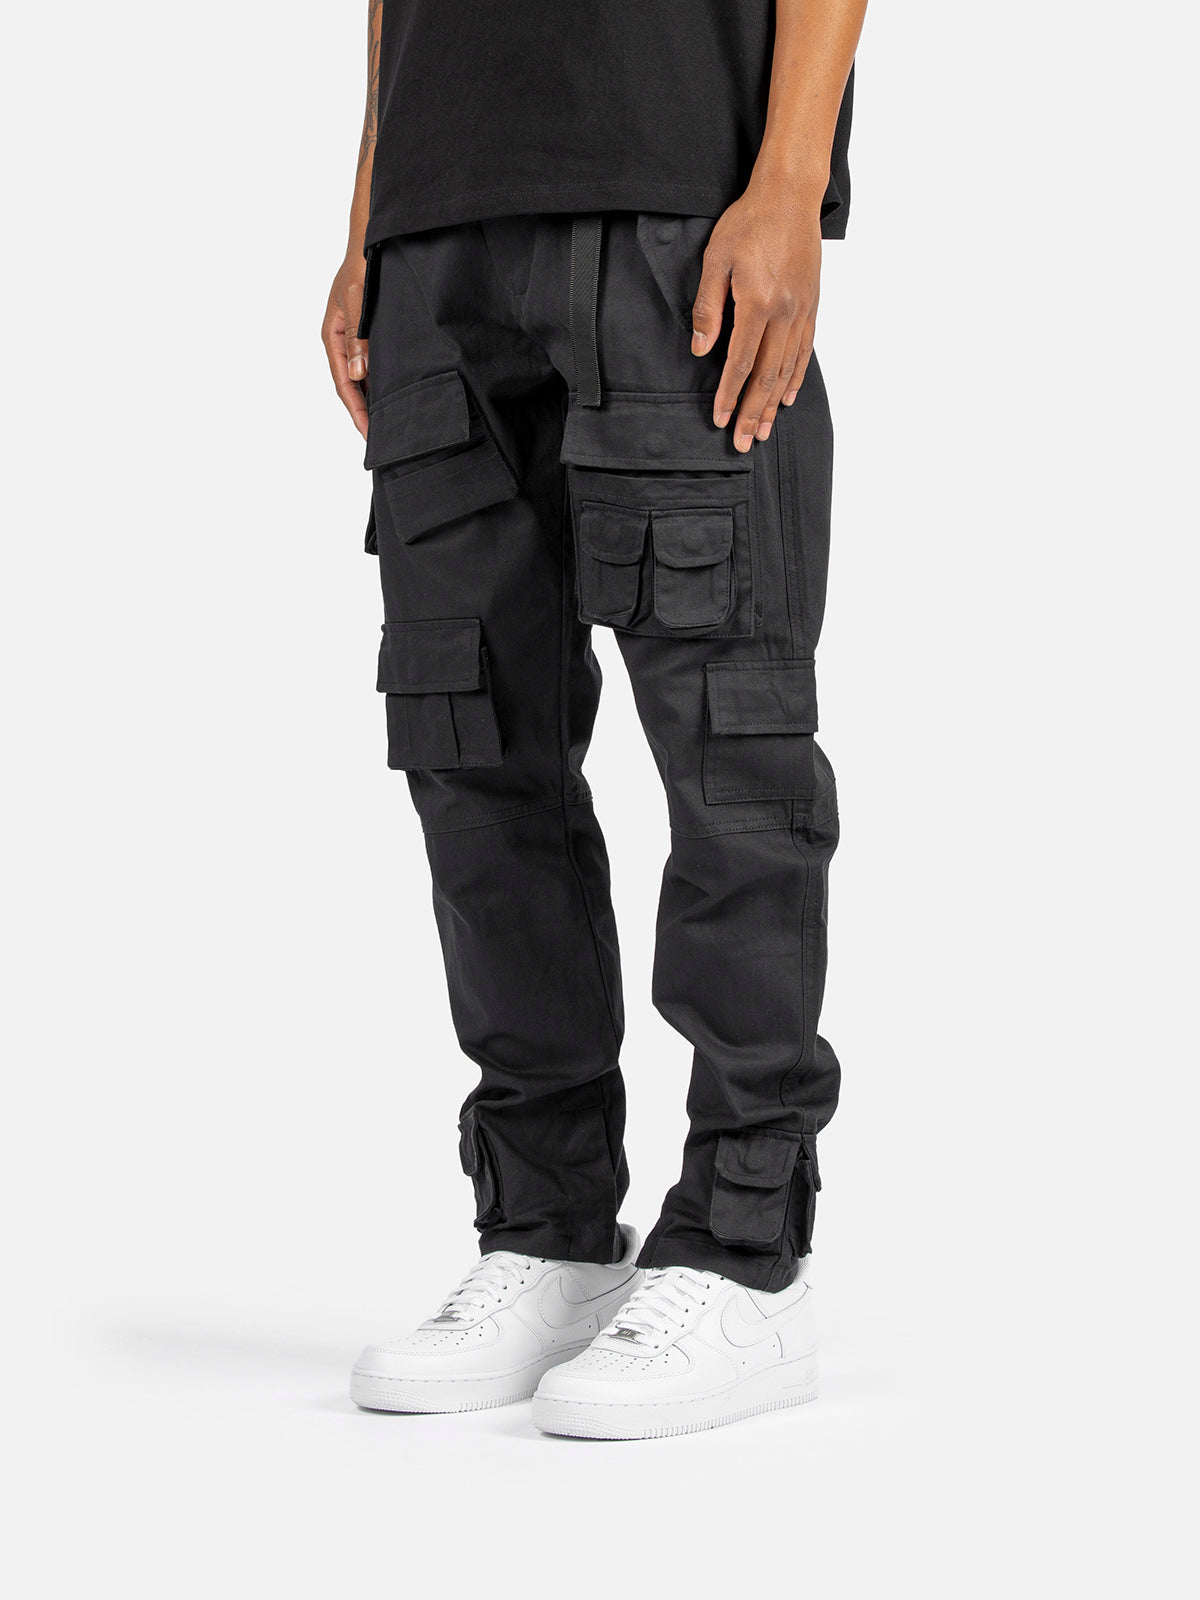 N30 Cargo Pants - Black | Blacktailor – BLACKTAILOR